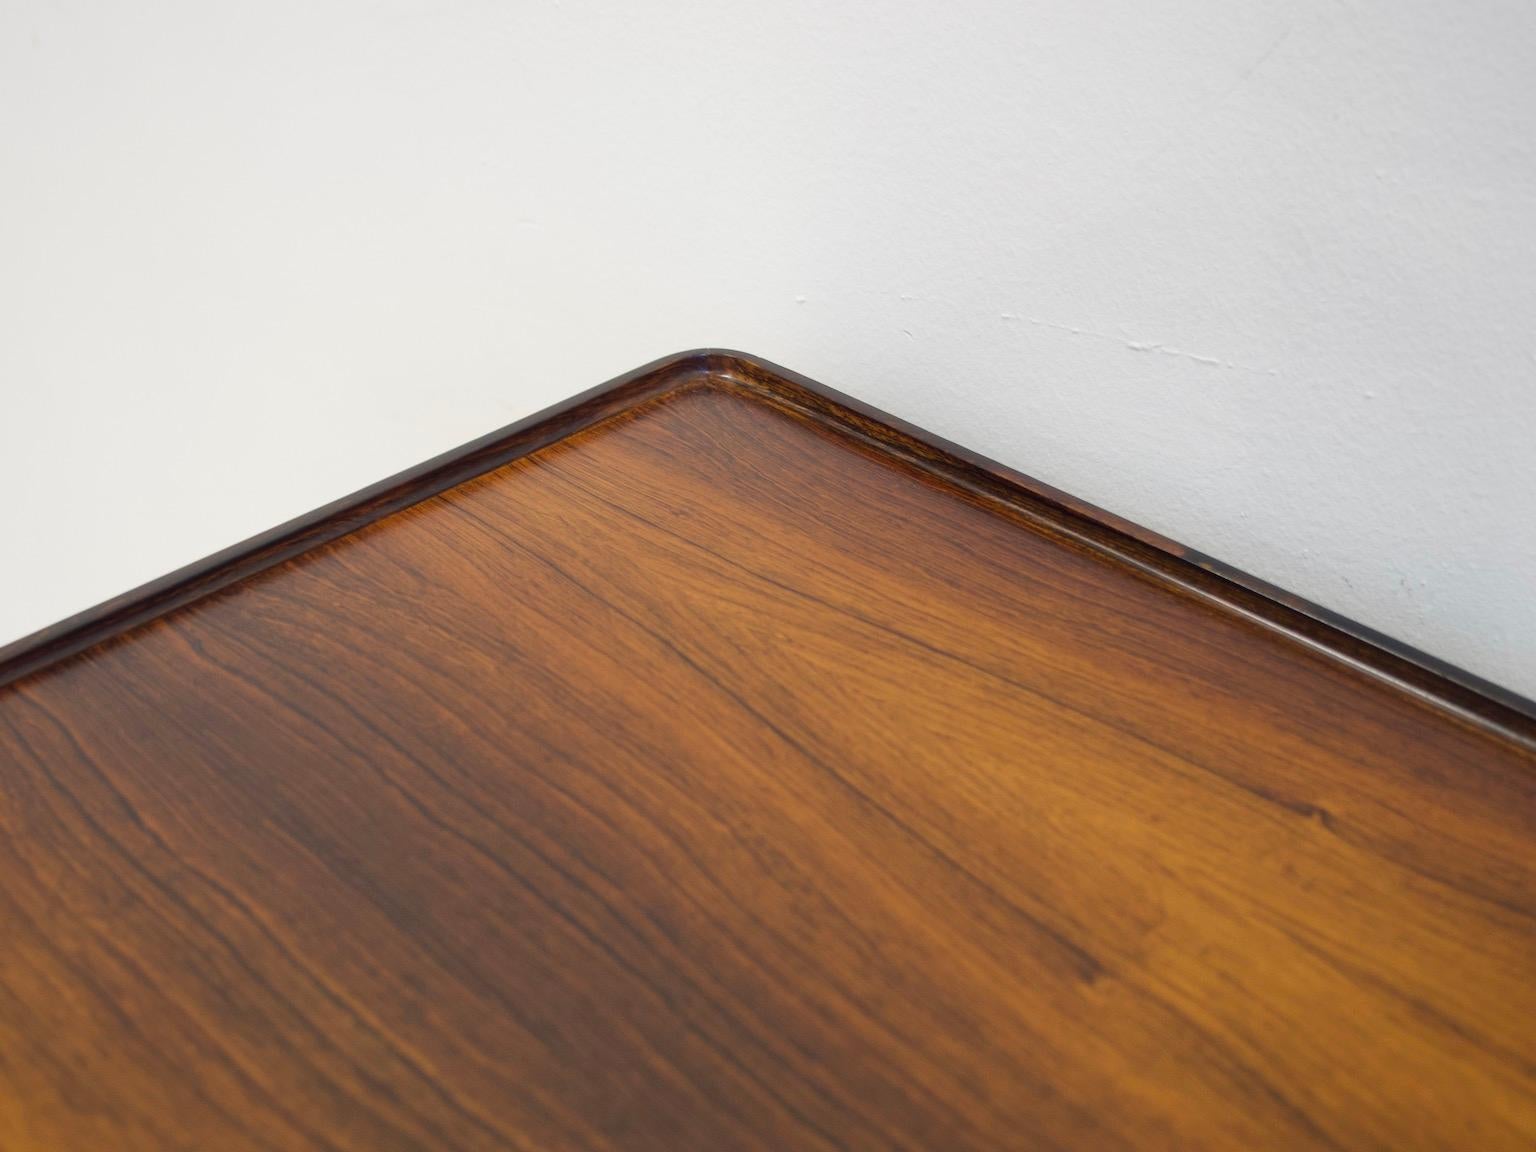 Minimalist Wooden Desk with Raised Edge by Erik Riisager Hansen 6